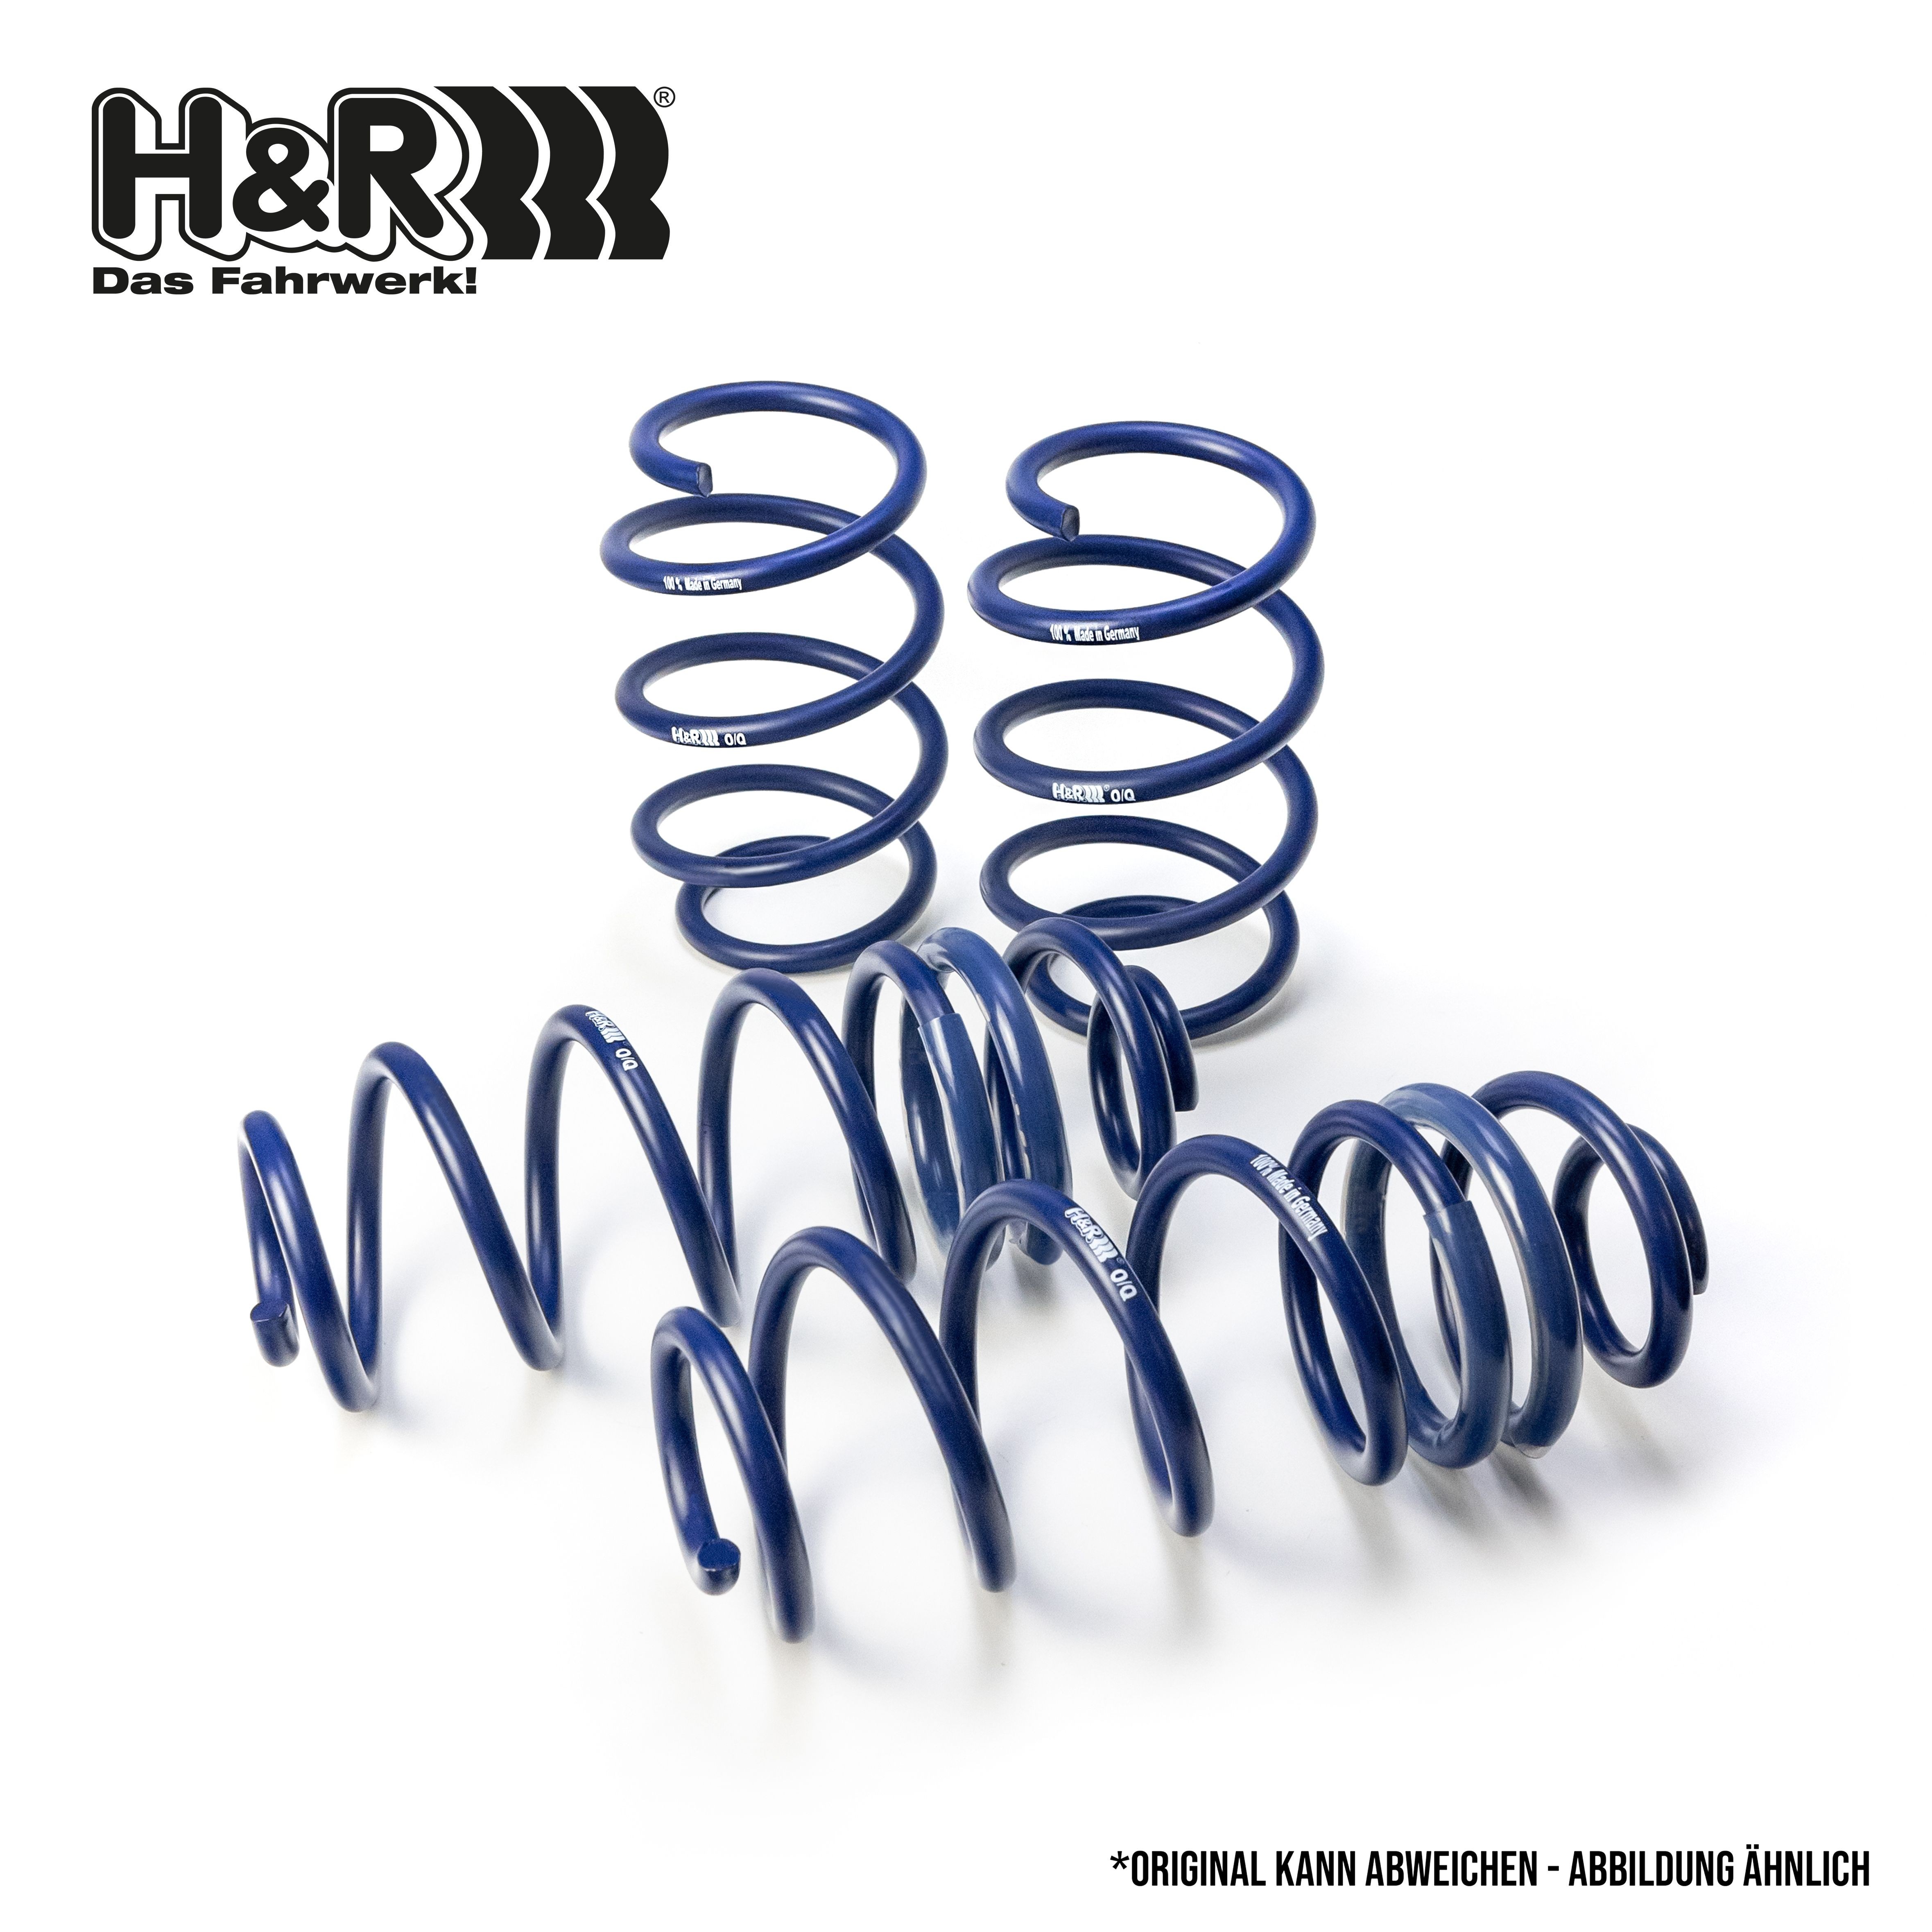 H&R Coil spring kit 29261-2 buy online